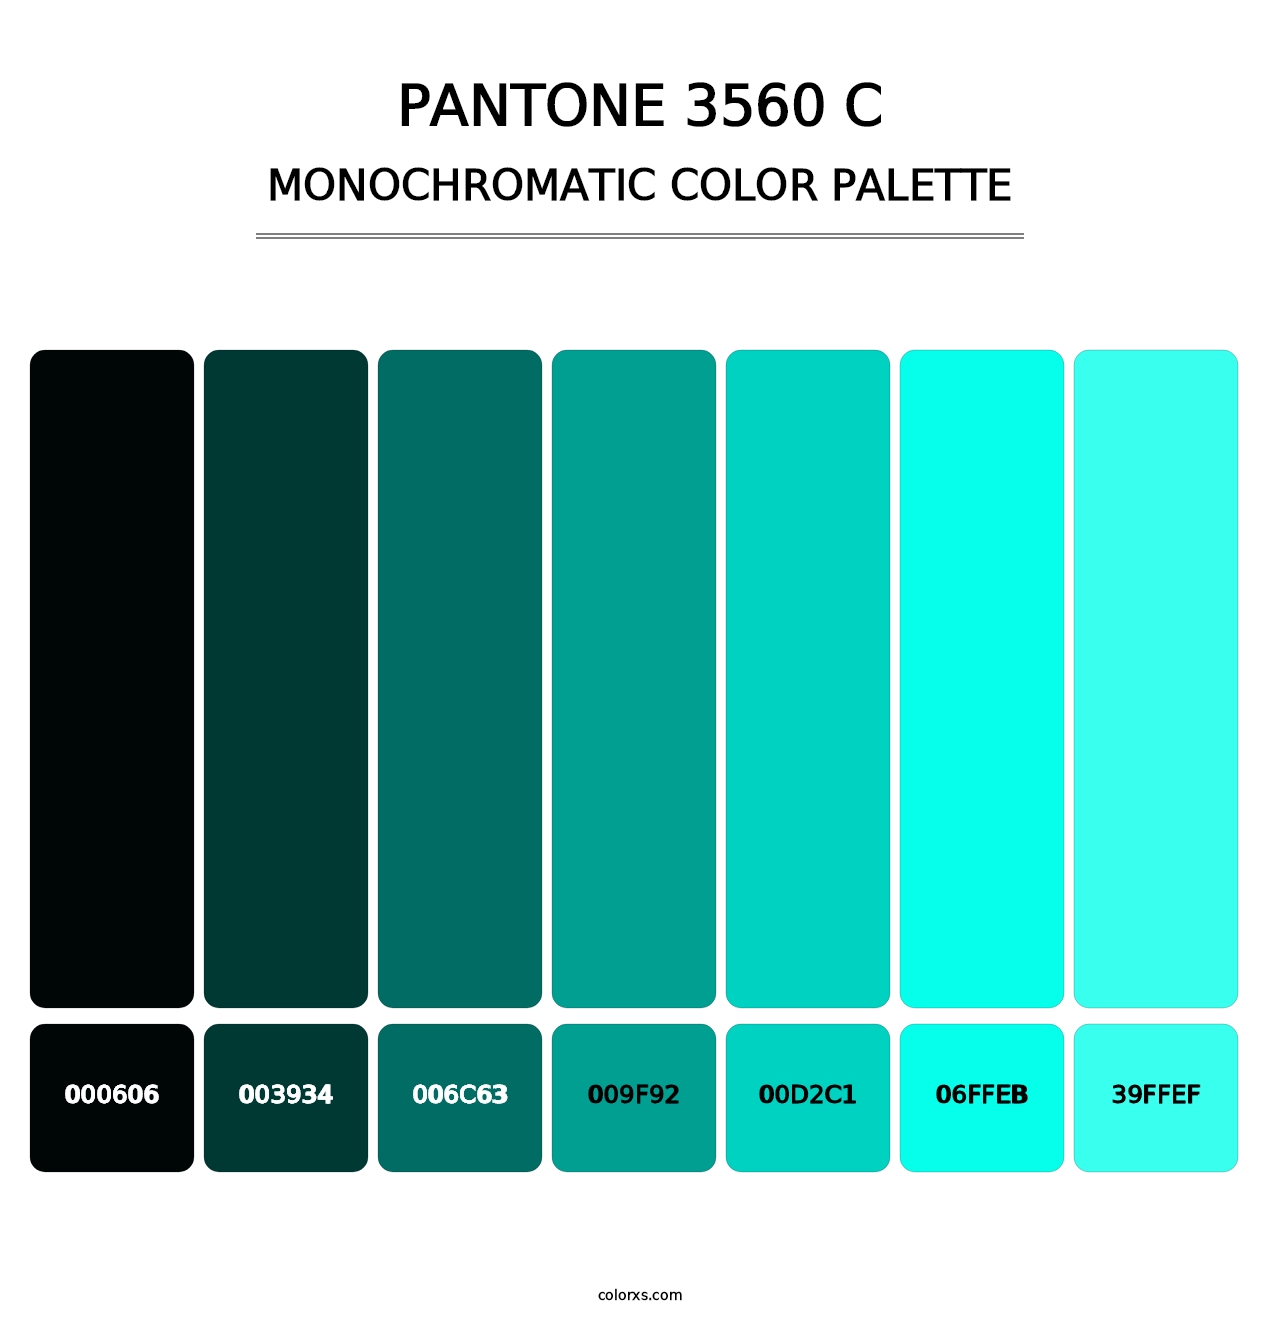 PANTONE 3560 C - Monochromatic Color Palette